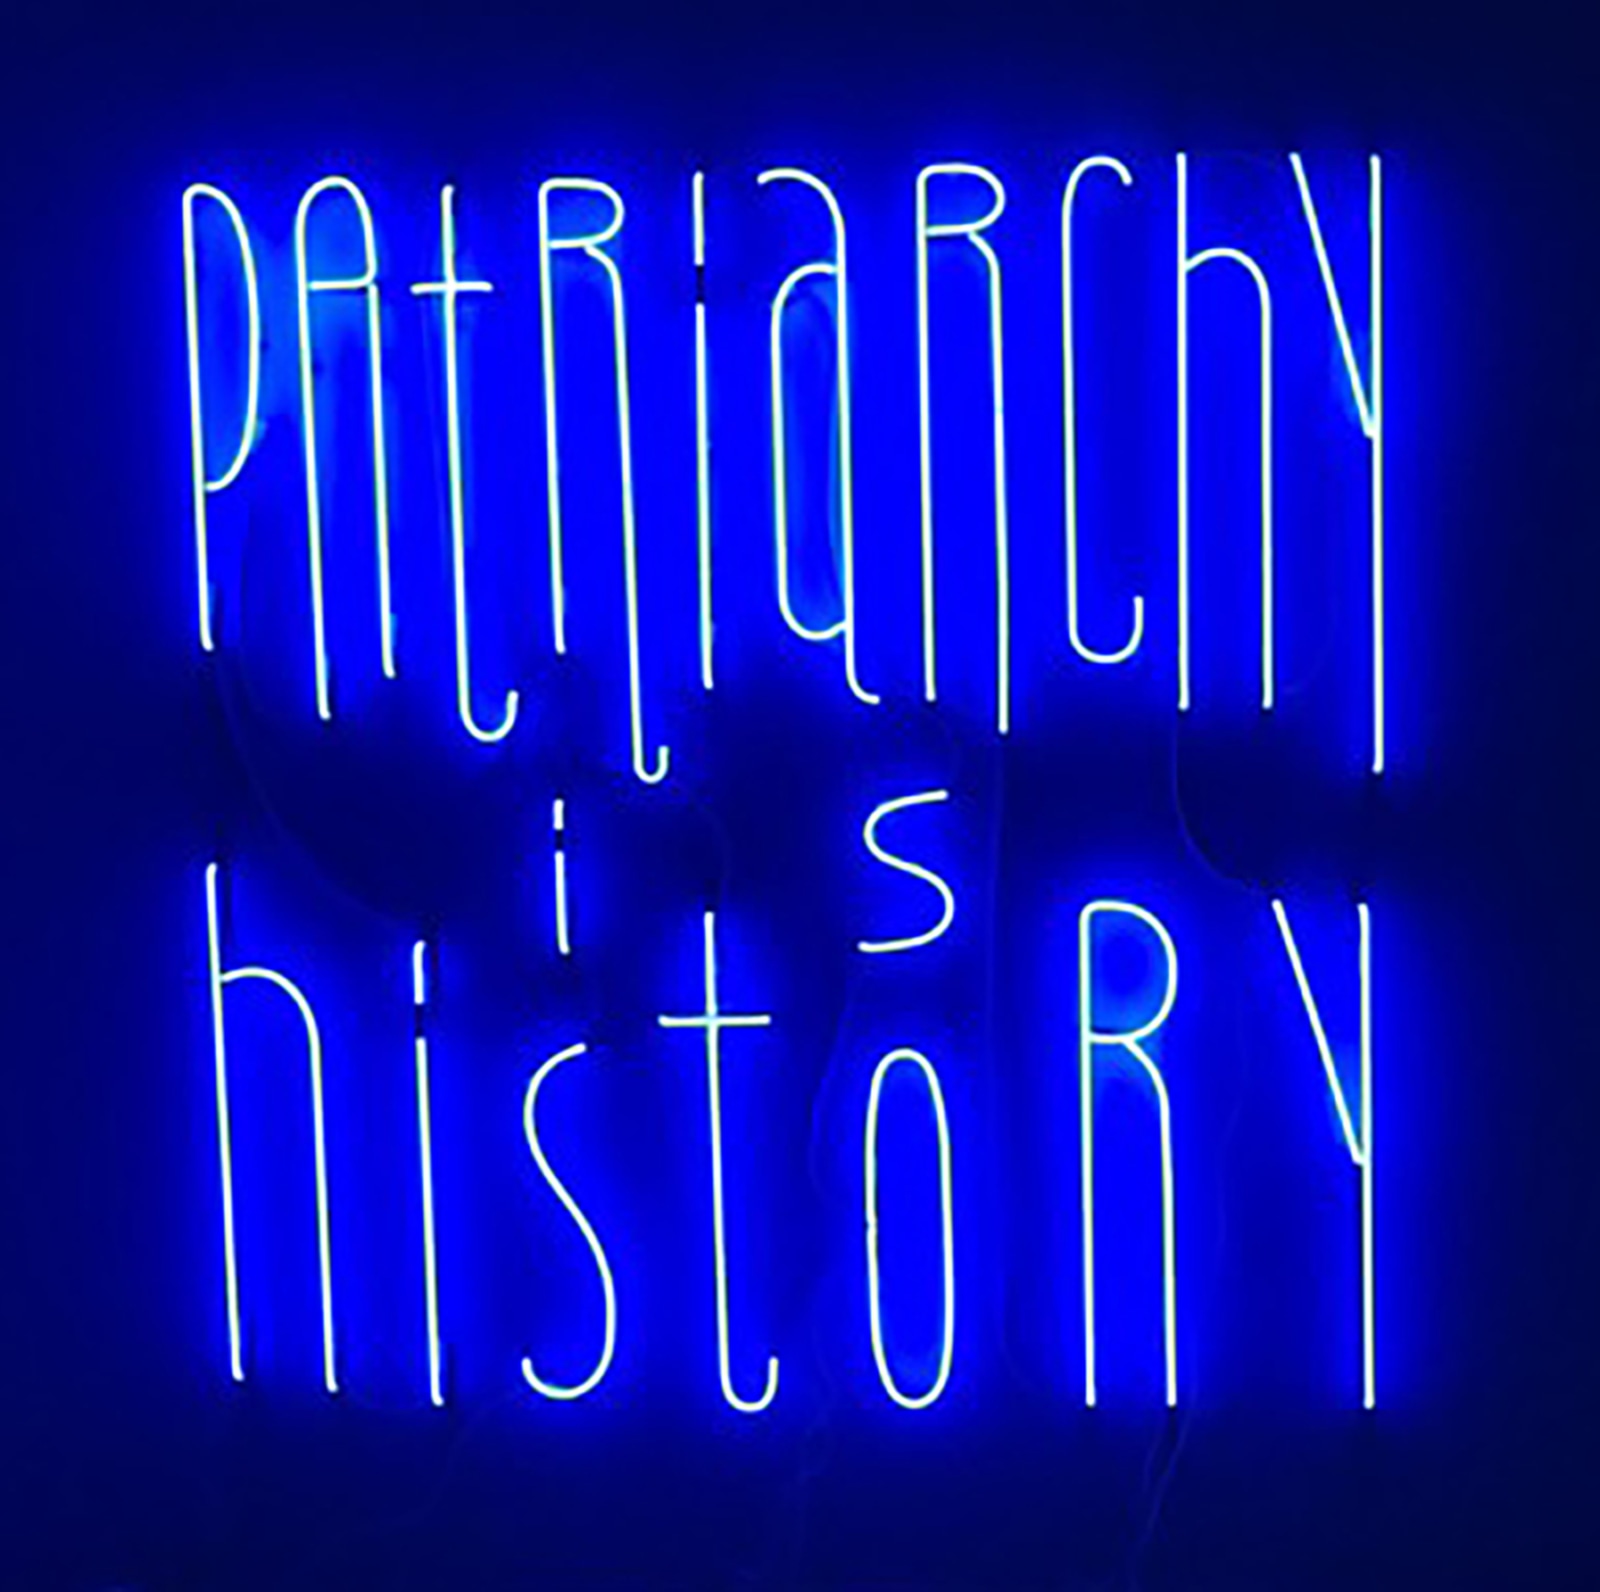 Yael Bartana, Patriarchy is history, 2019